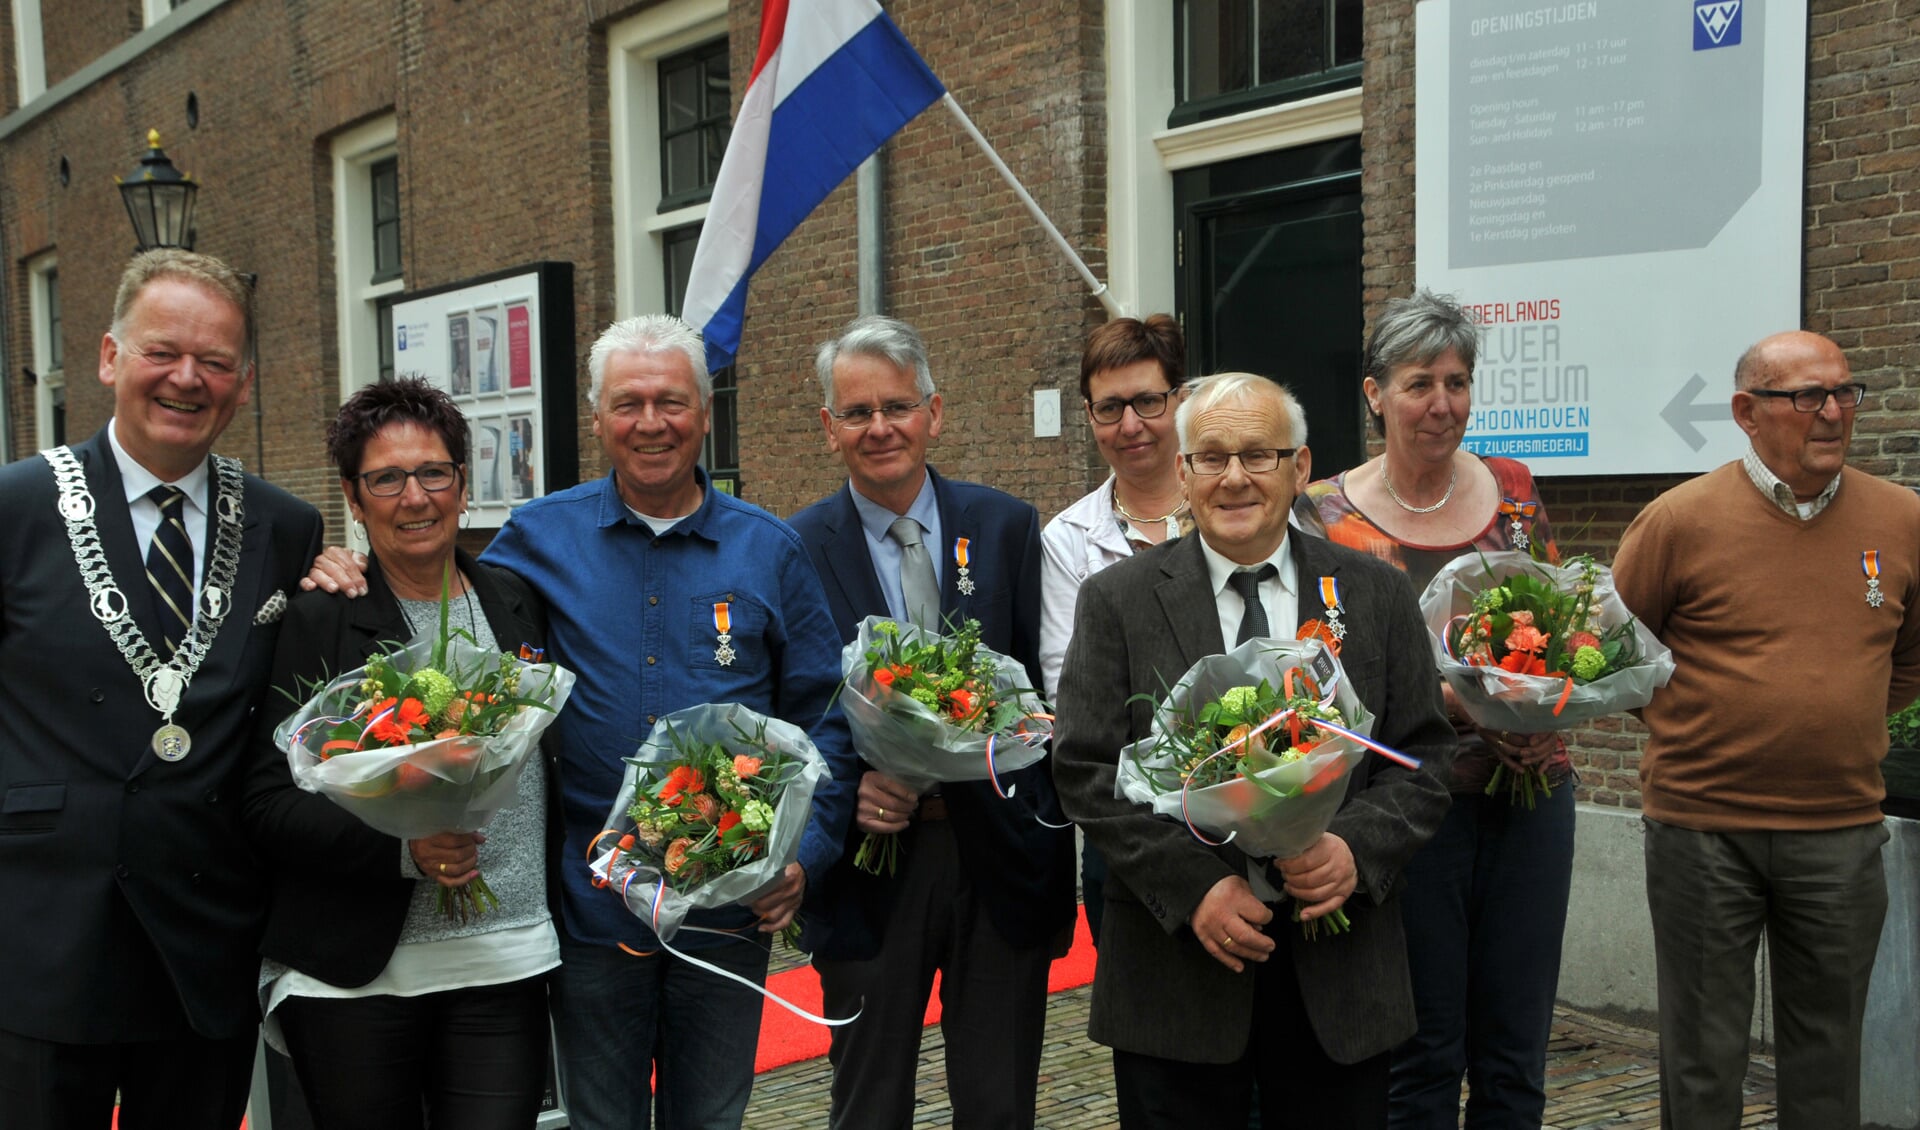 • v.l.n.r. burgemeester Cazemier, Aartje en Harry Molenberg, Piet Speksnijder, Corrie de Gier, Anton Littel, Mariët Verkuil en Henk van Hofwegen. (foto: Adri Verhoeven)